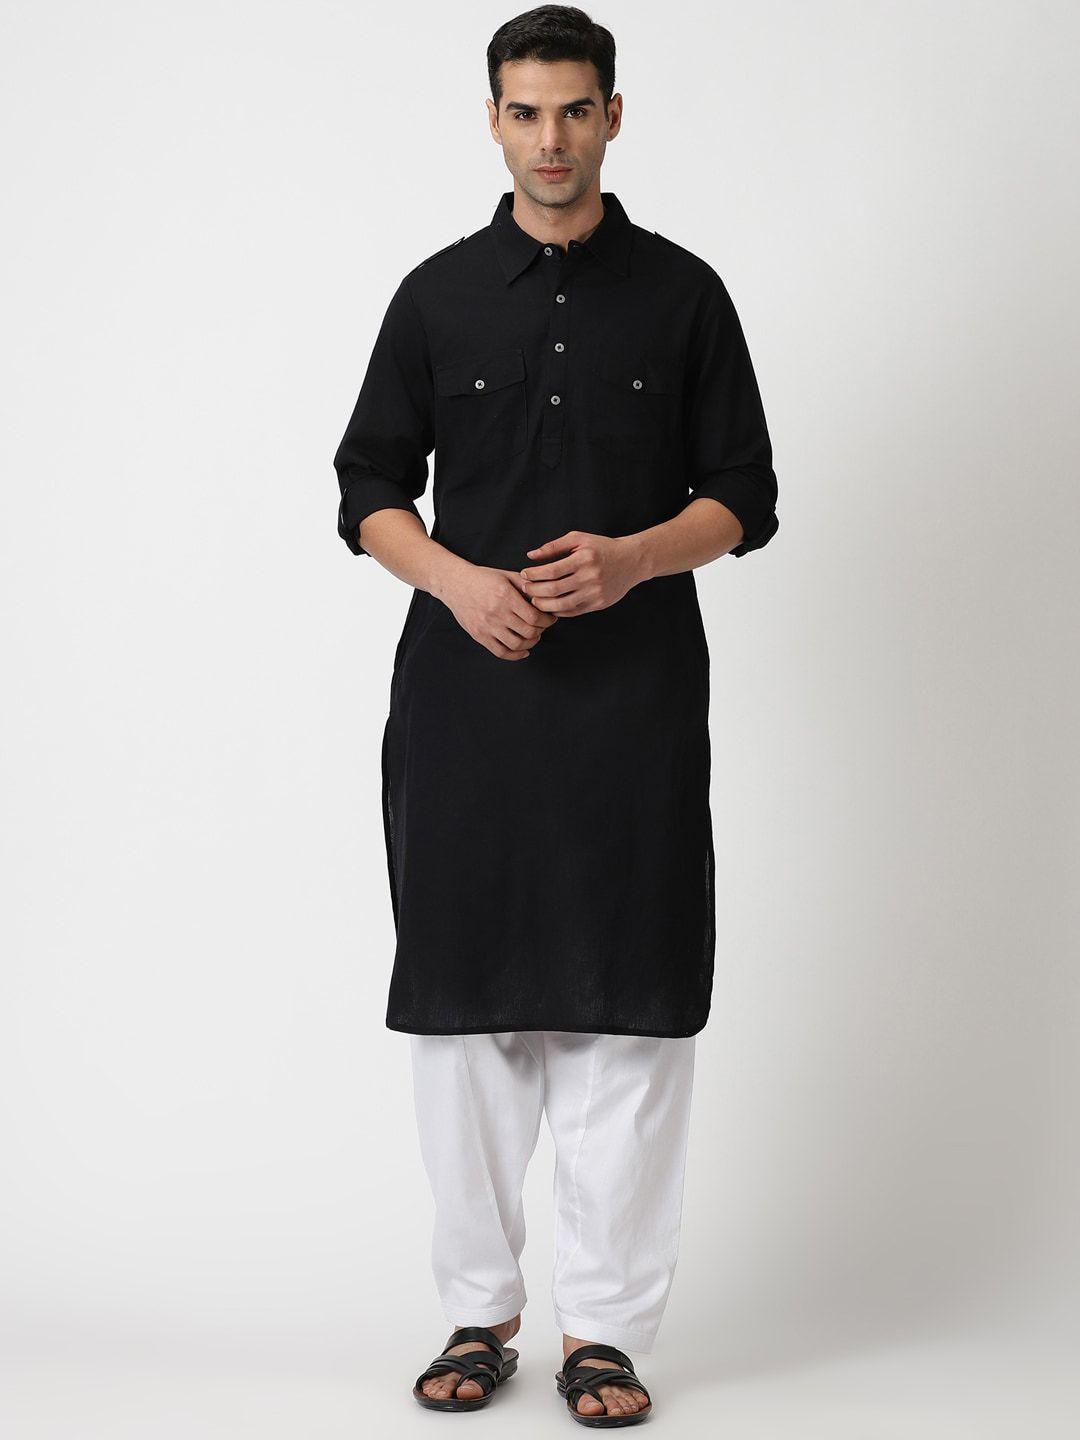 saffron threads shirts collar pathani cotton linen kurta